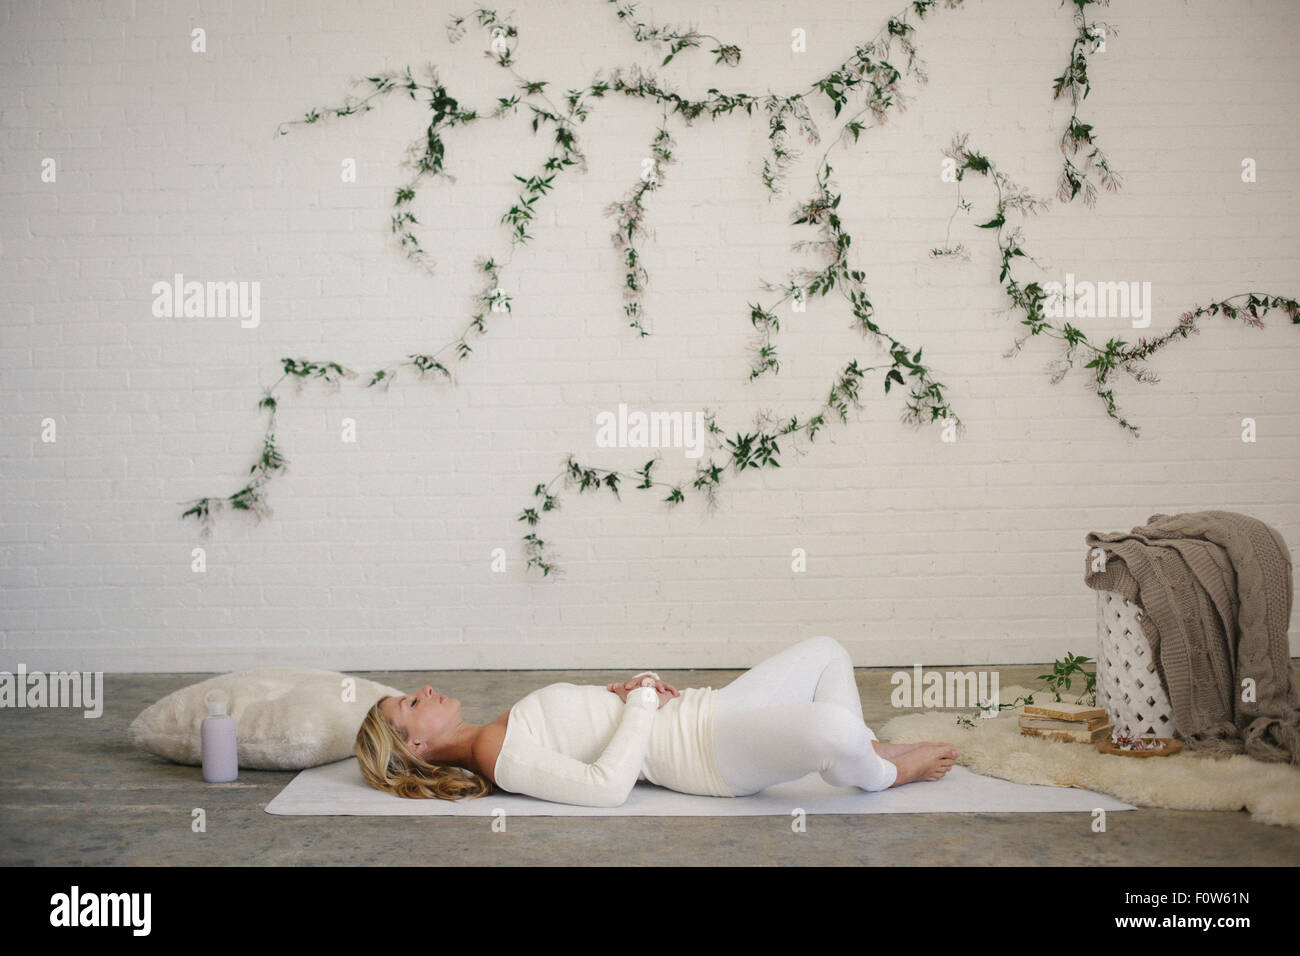 Une femme blonde dans un collant blanc et des jambières, couché sur un tapis blanc dans une chambre. Une plante rampante sur le mur derrière elle. Banque D'Images